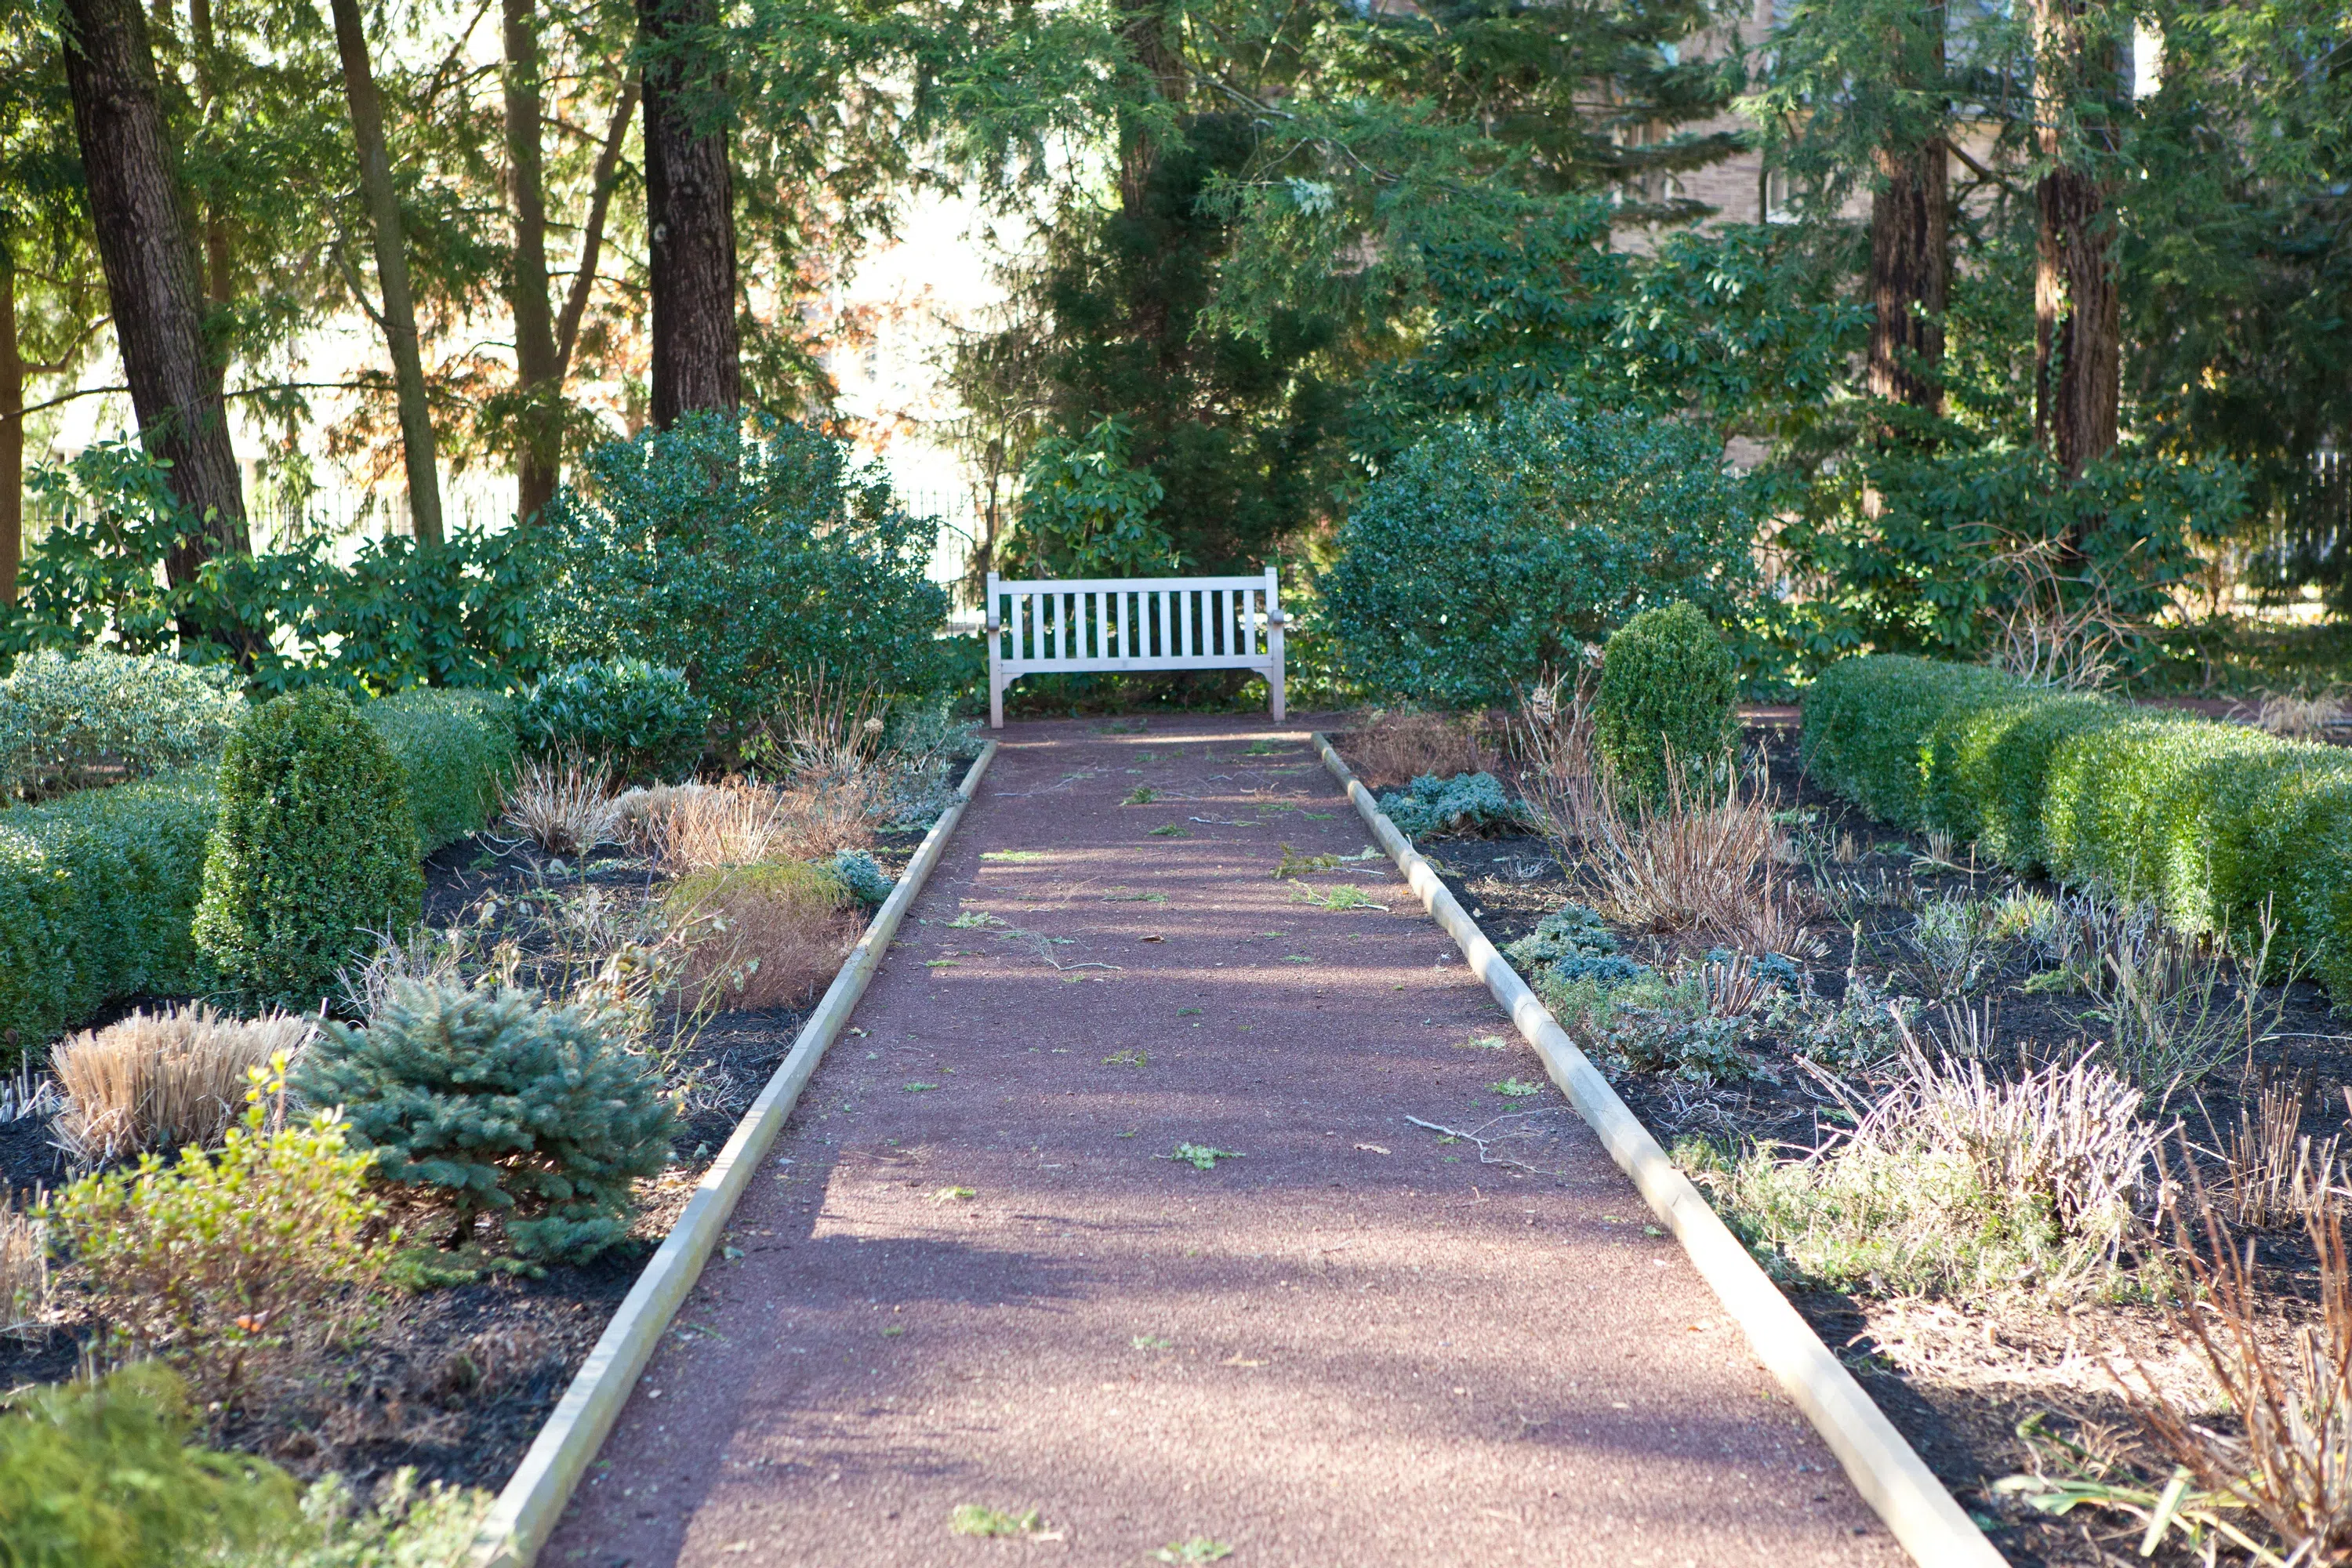 A quiet spot in Prospect Garden